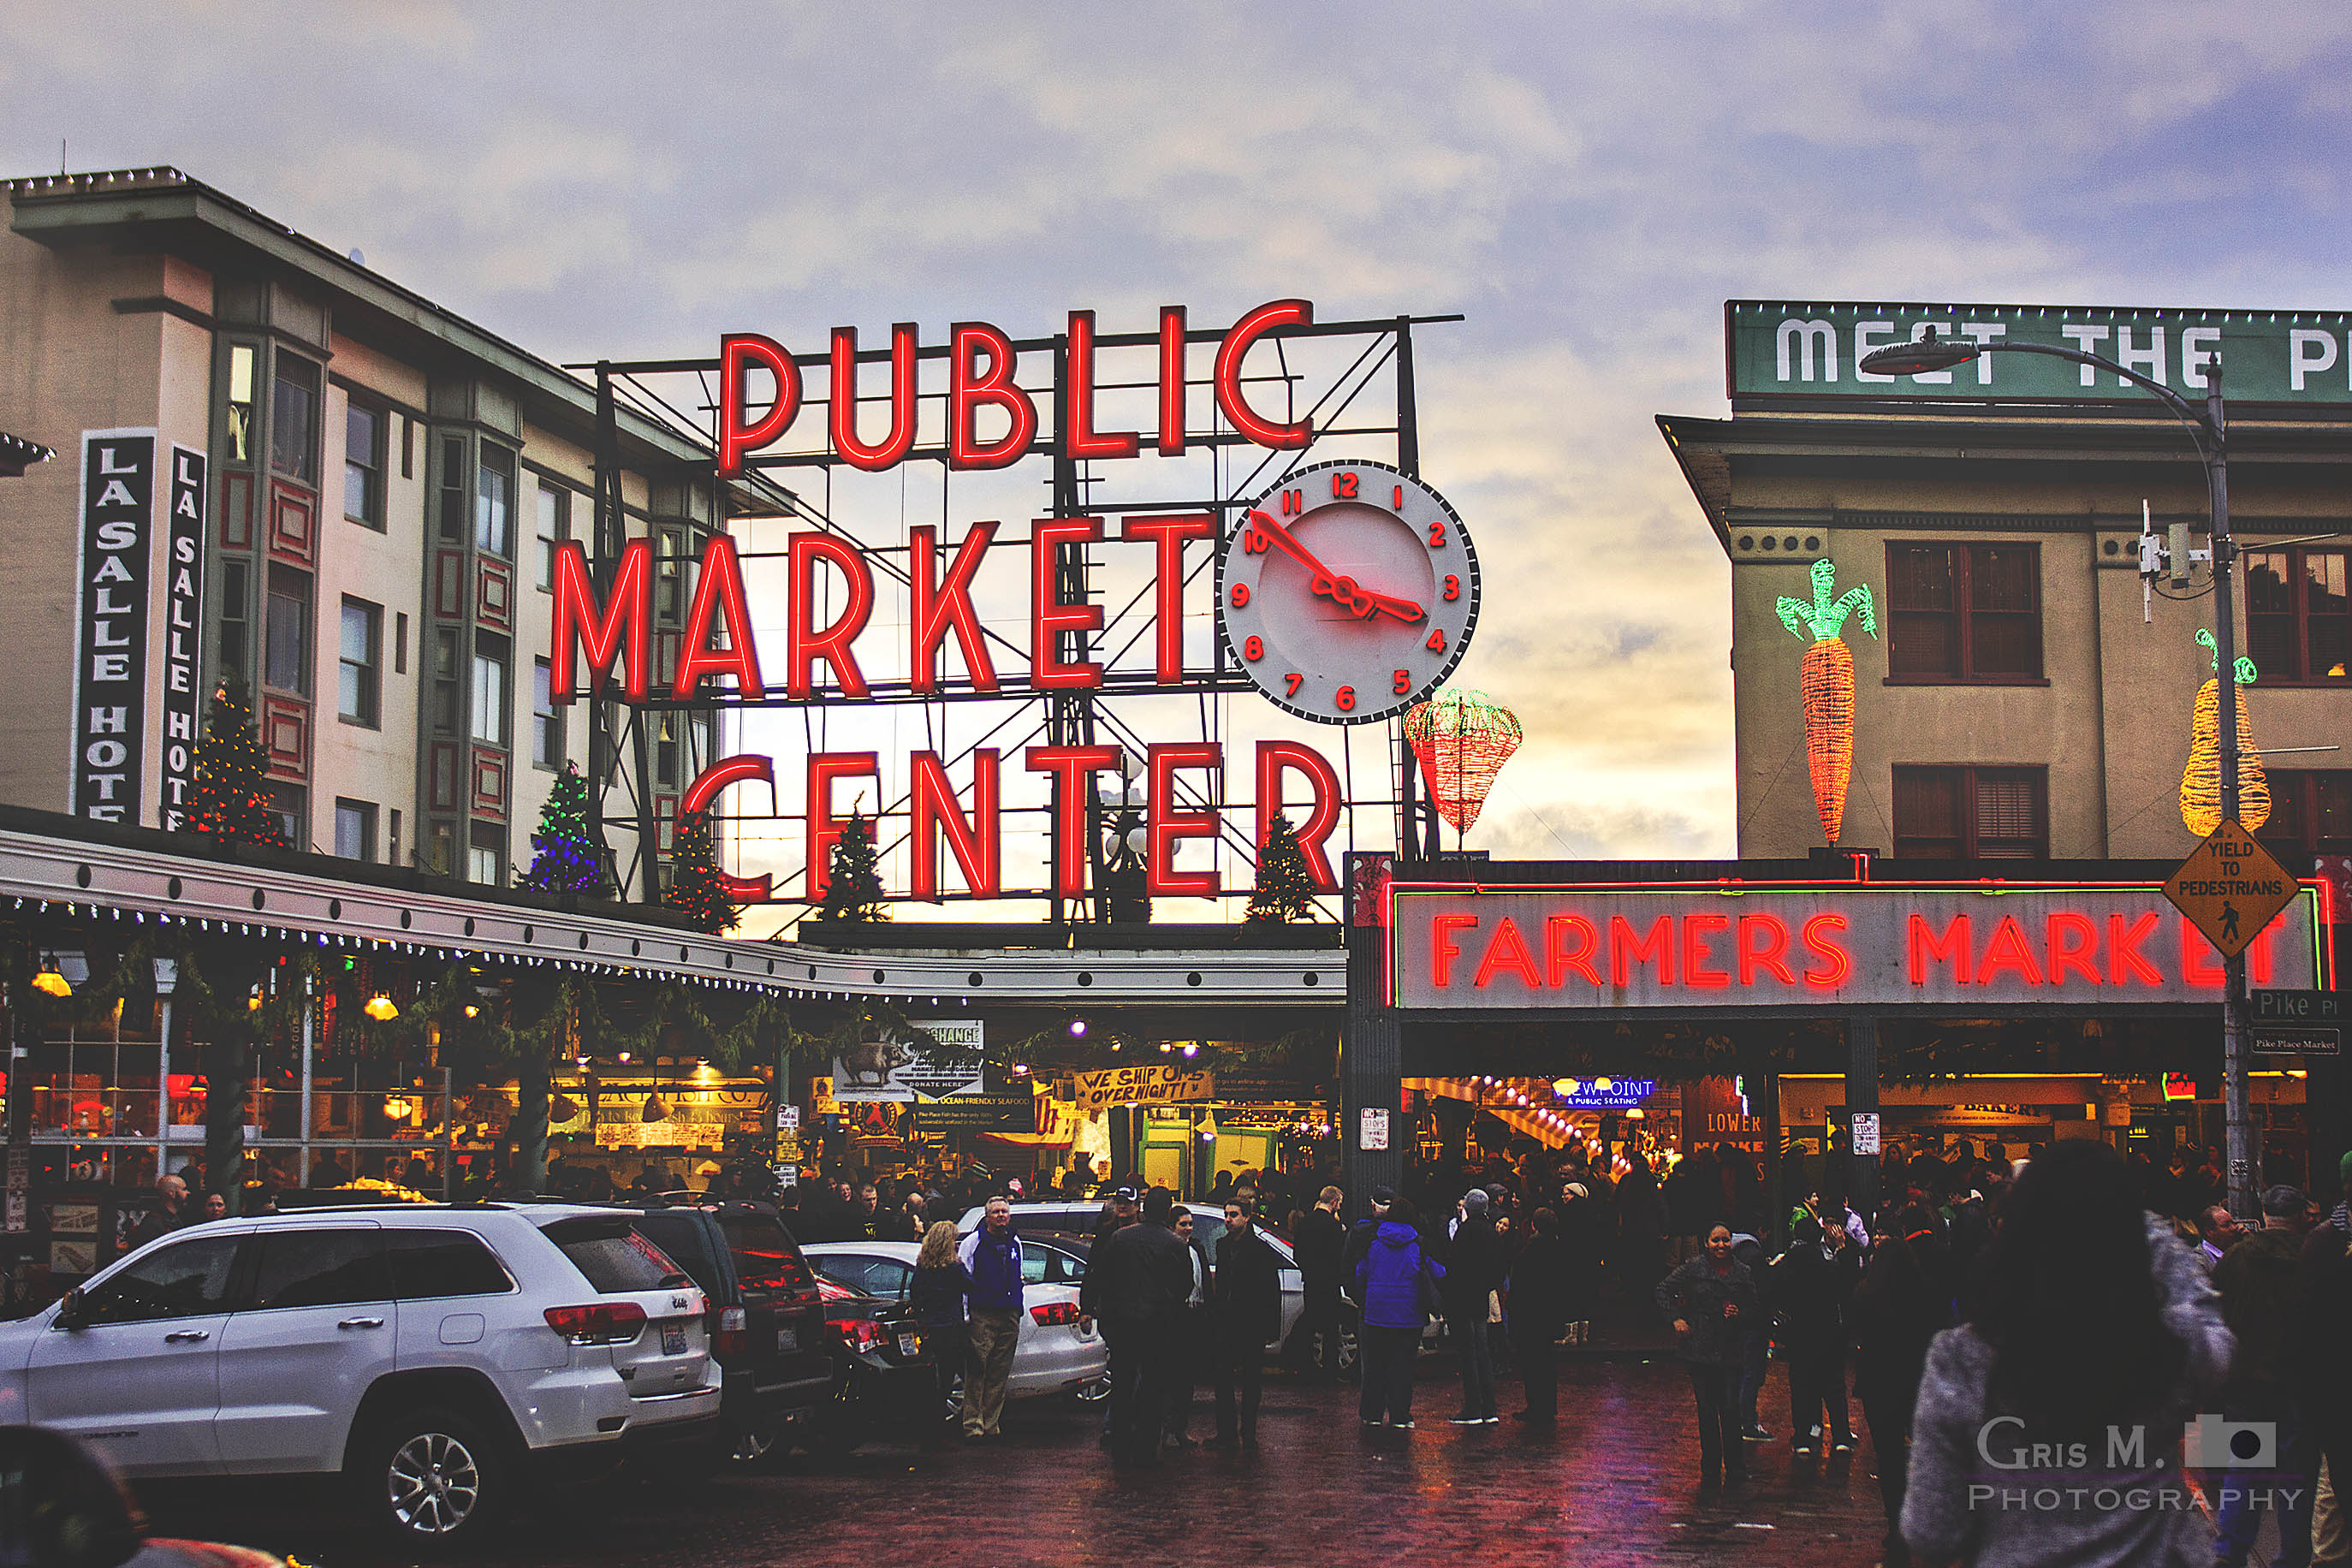 Seattle Public Market Center - Imgur